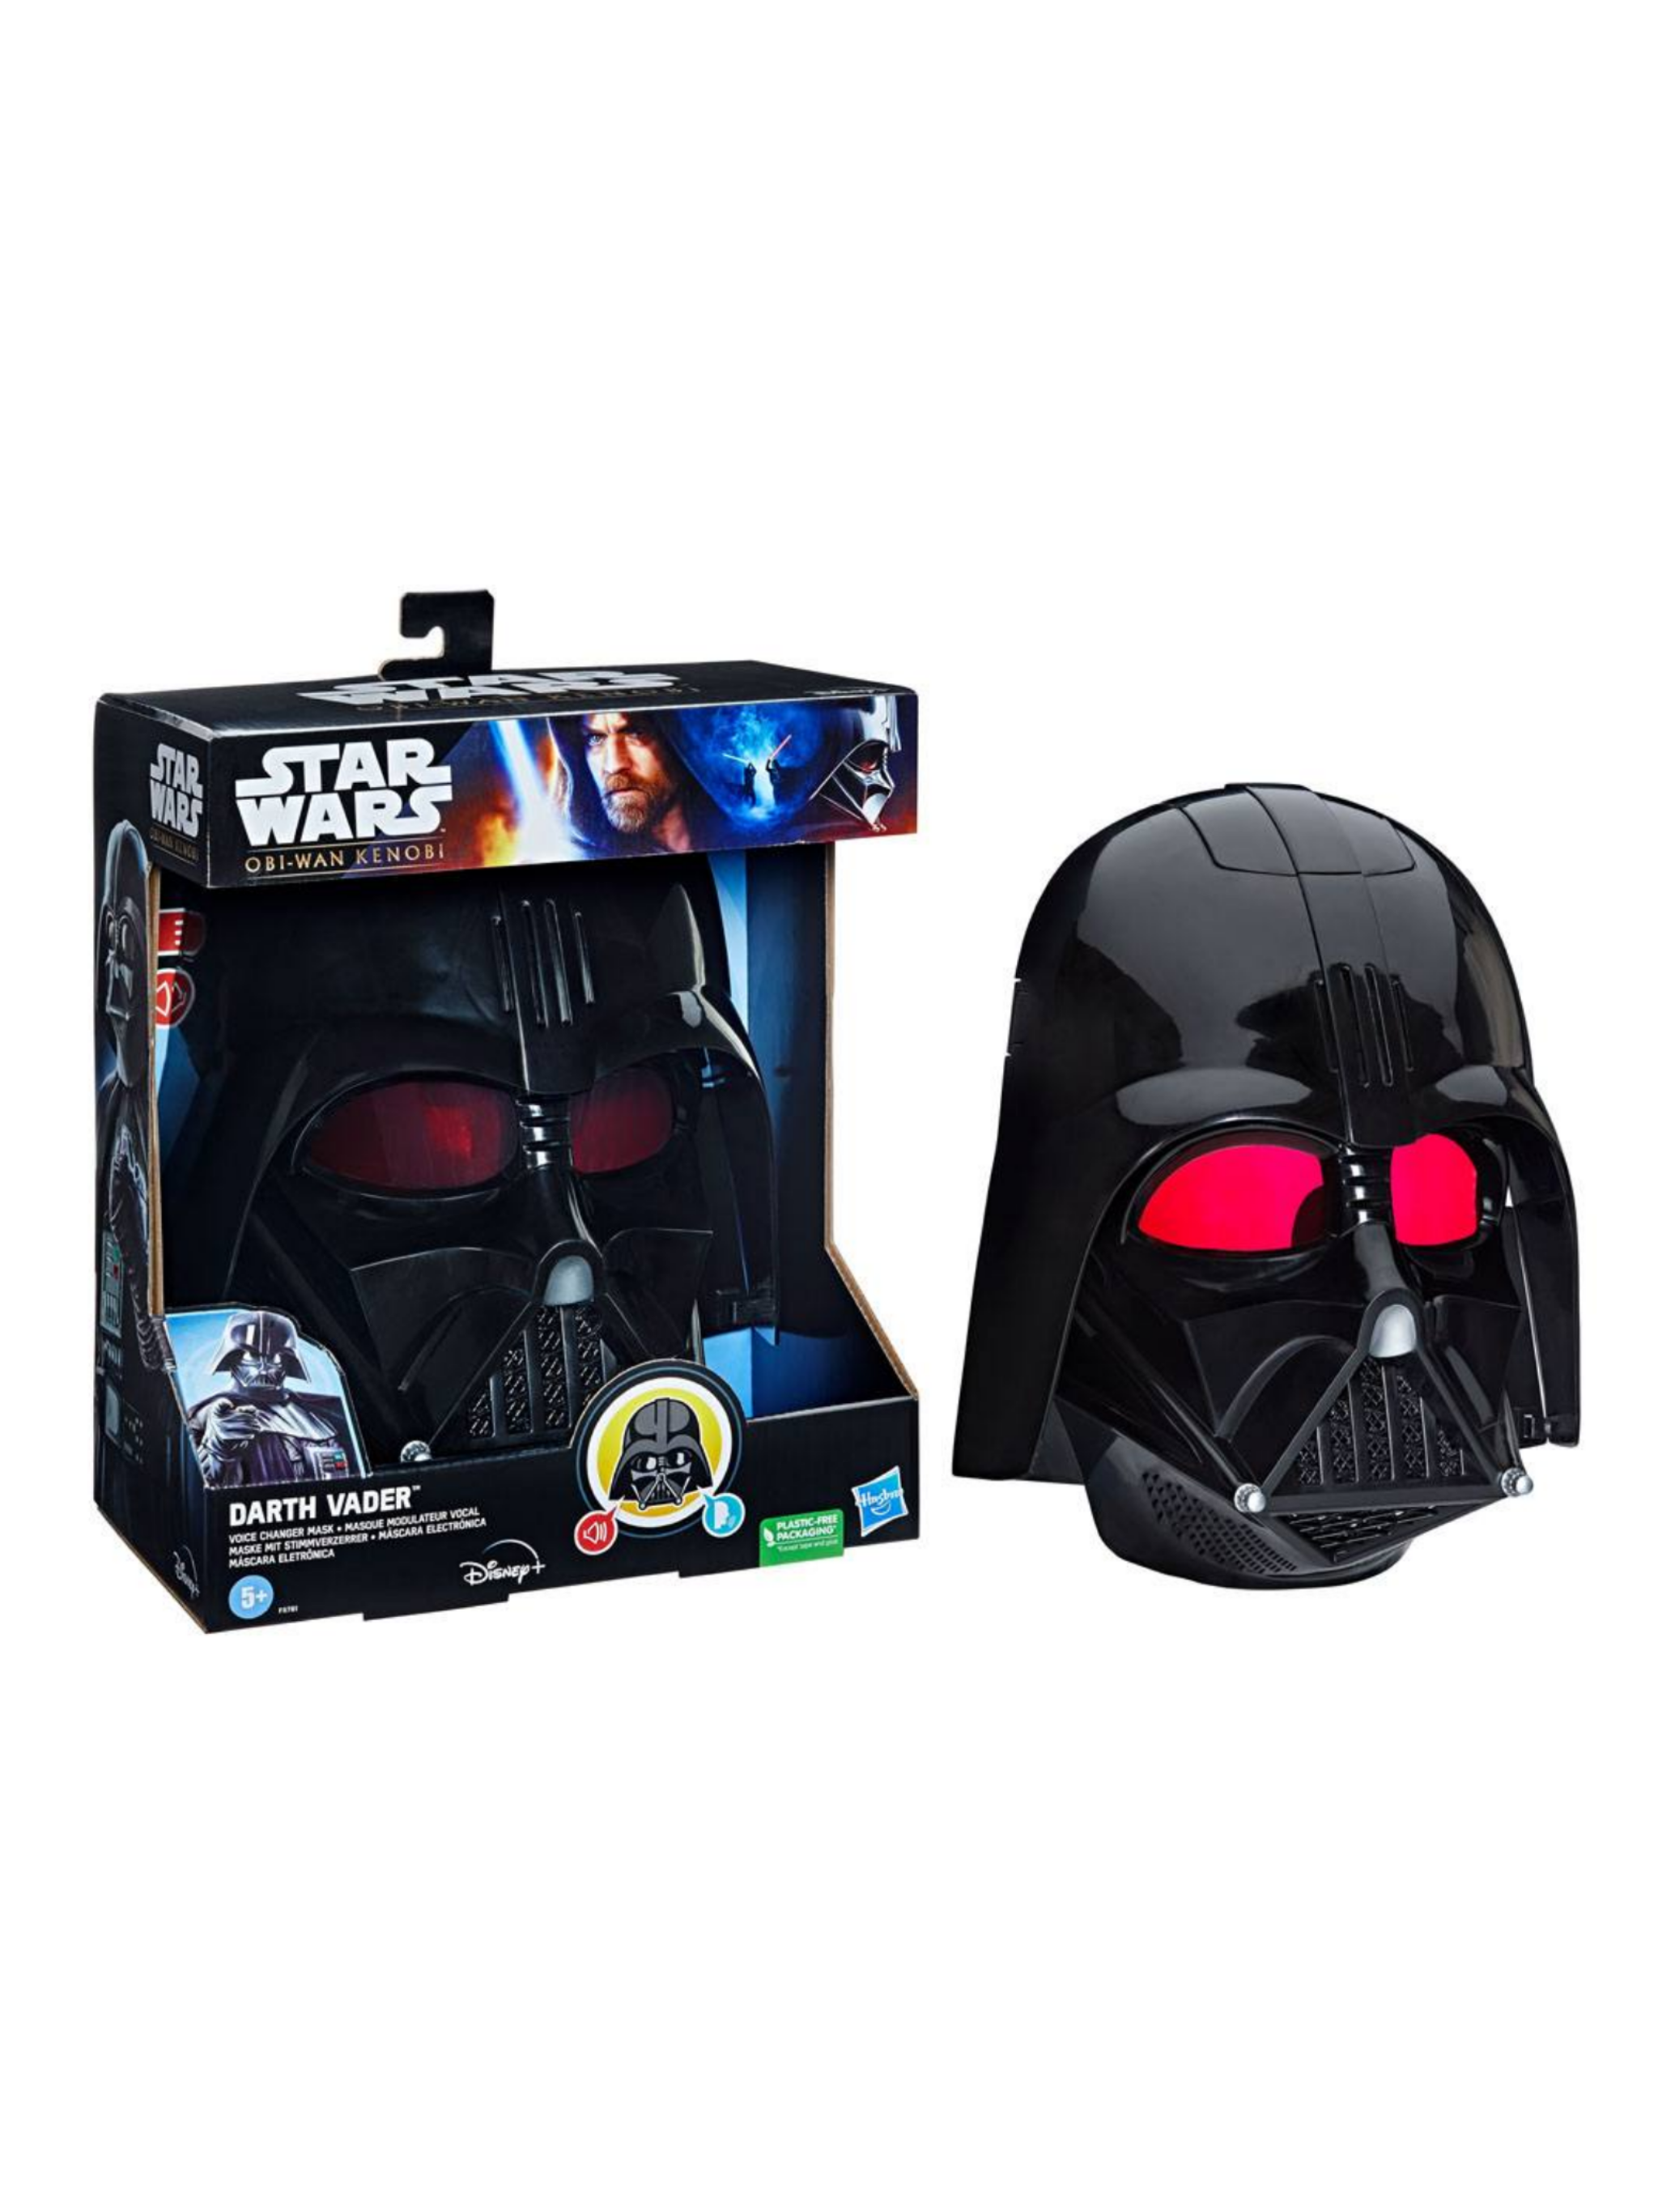 Star Wars: Obi-Wan Kenobi Elektronische Maske mit Stimmenverzerrer Darth Vader